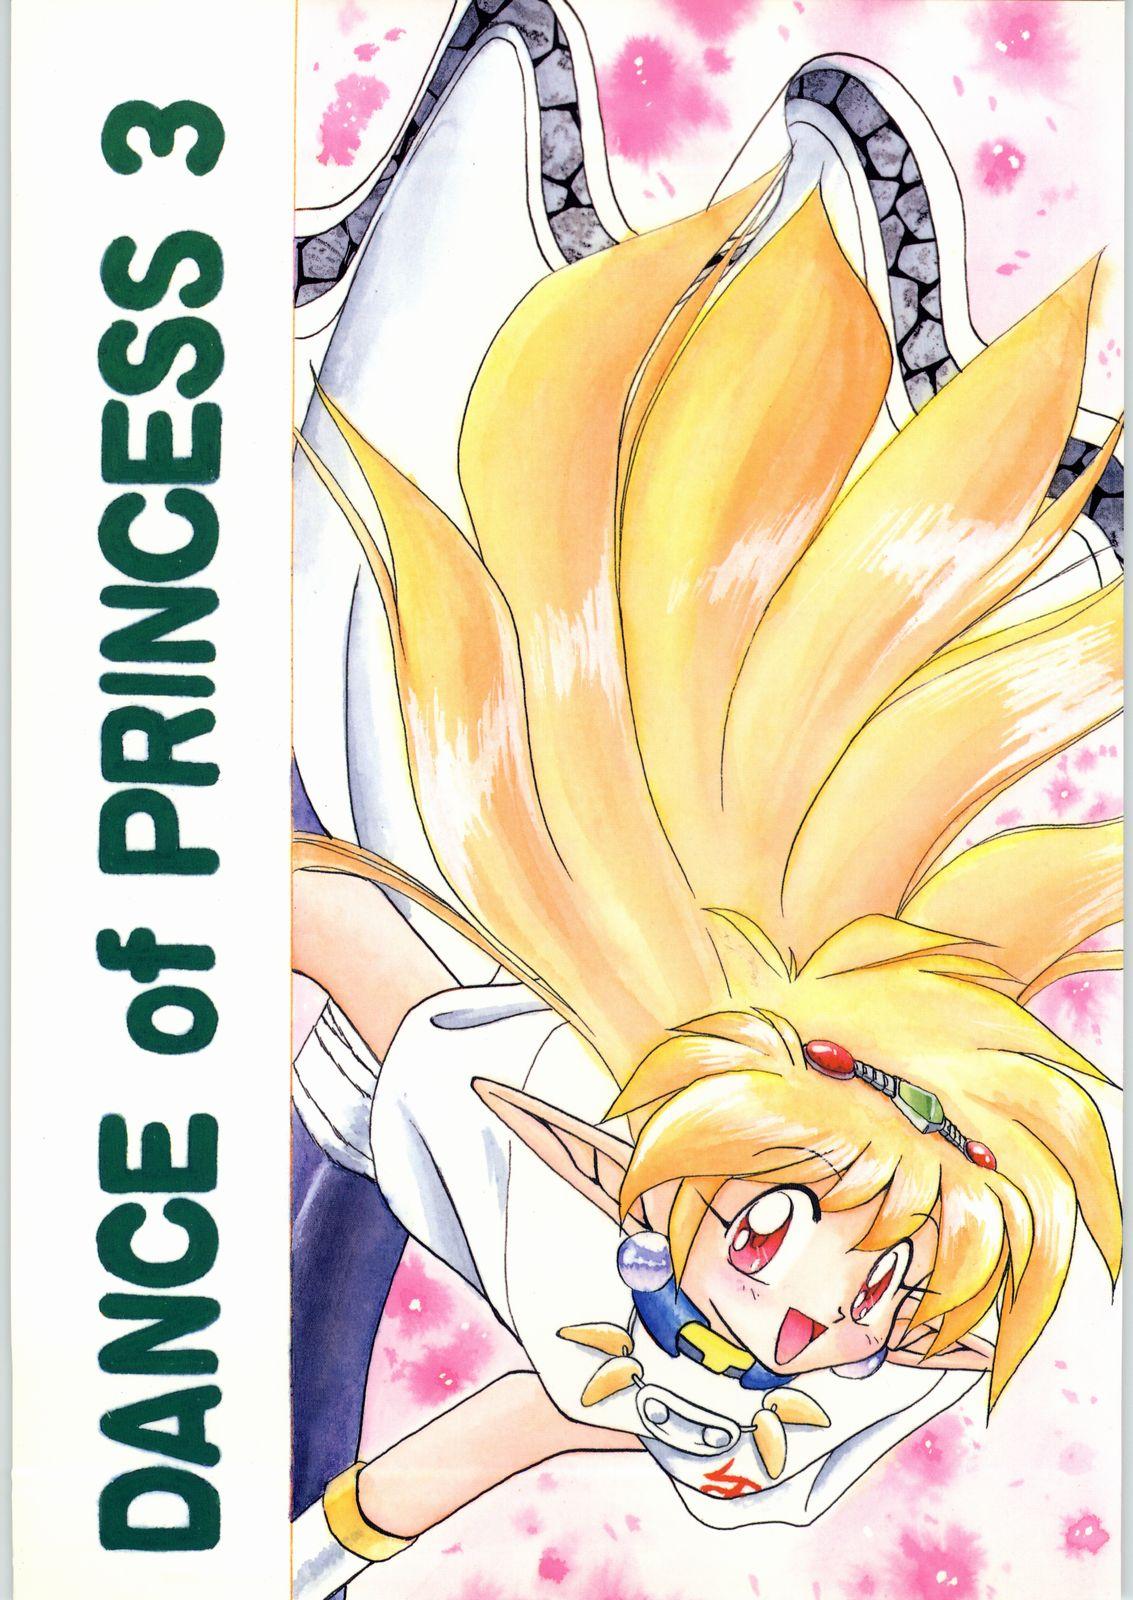 Whores Dance of Princess 3 - Sailor moon Tenchi muyo Akazukin cha cha Minky momo Ng knight lamune and 40 Face - Picture 1